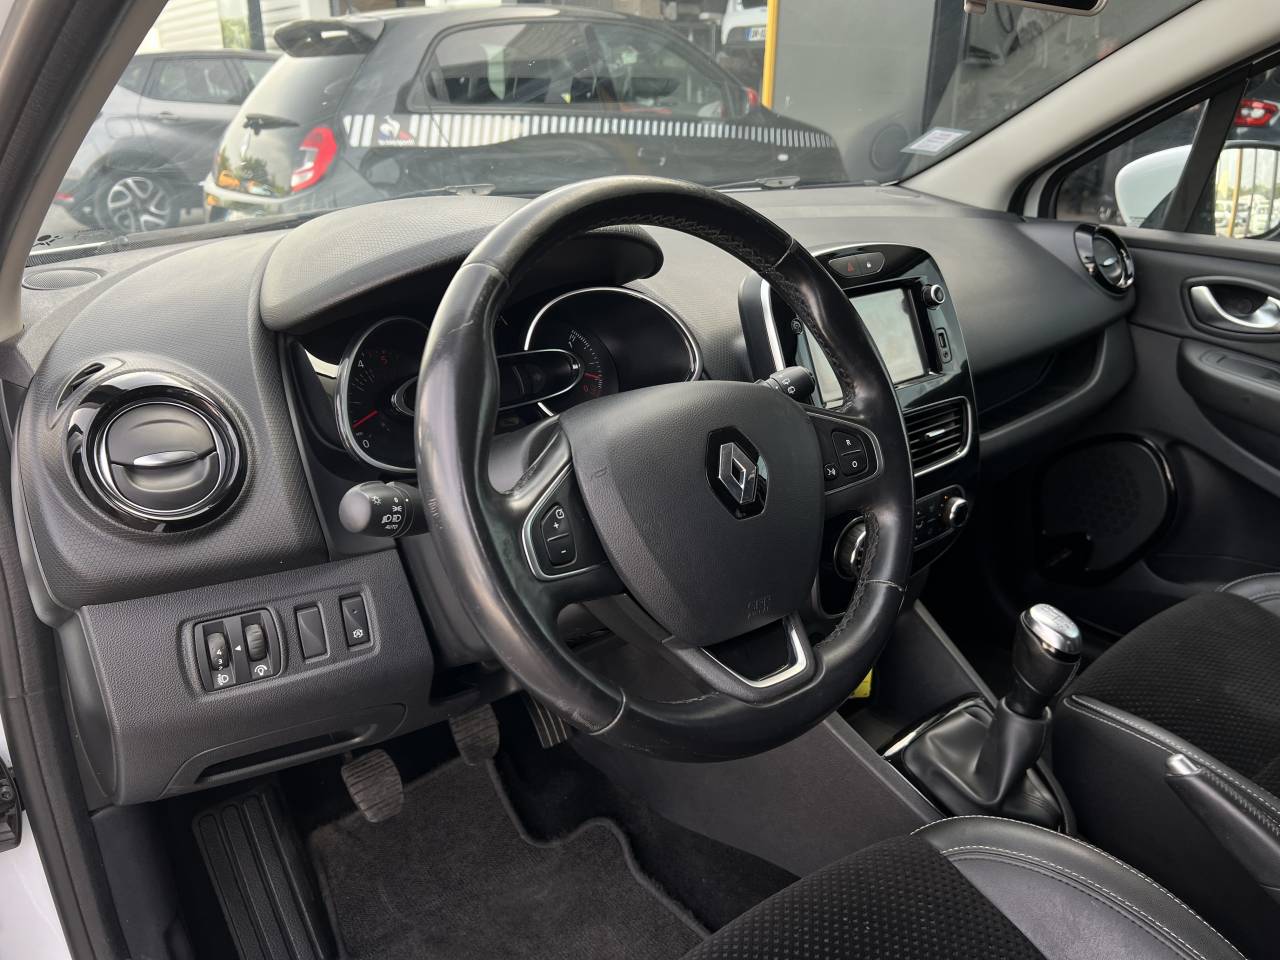 Renault Clio Estate  IV Intens ENERGY dCi 90 E6C 5 portes Break (mai 2018) (co2 104)  groupe Vergnon